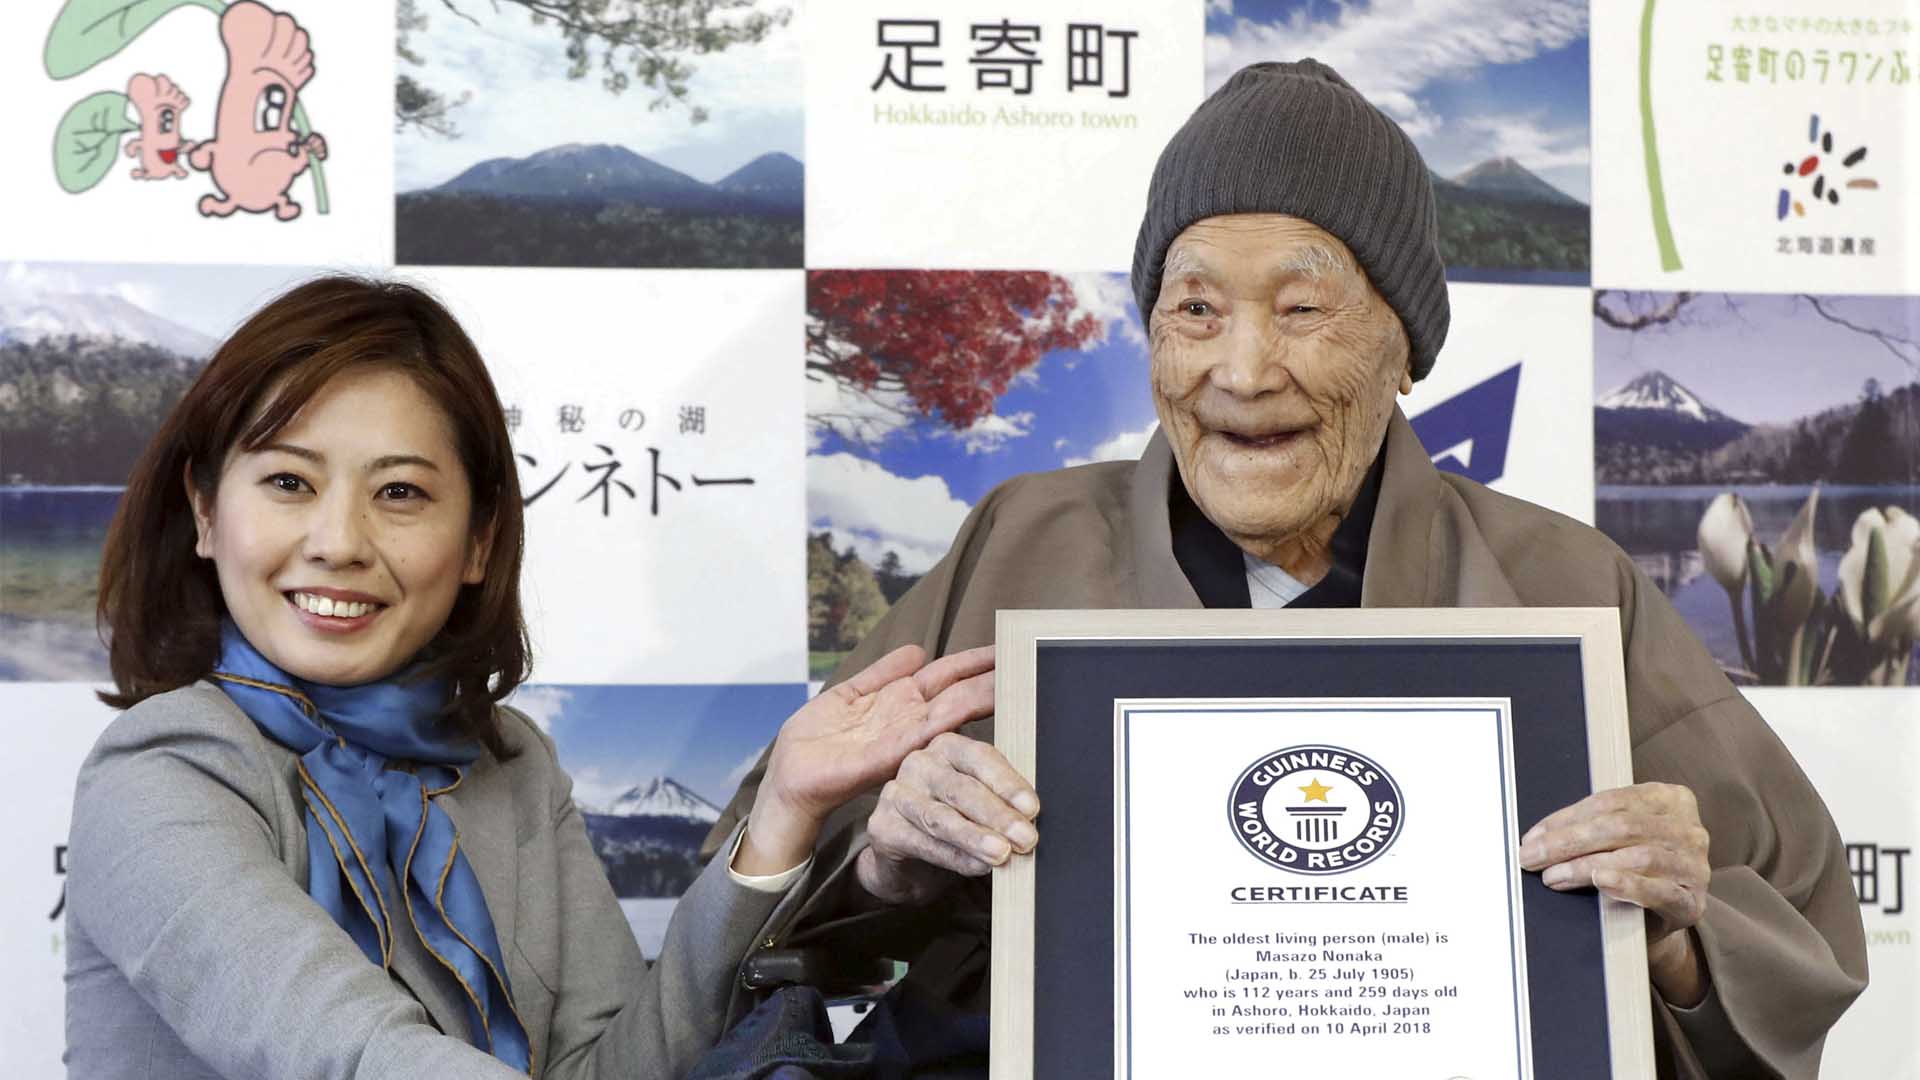 Fallece en Japón a los 113 años el "hombre más viejo del mundo"